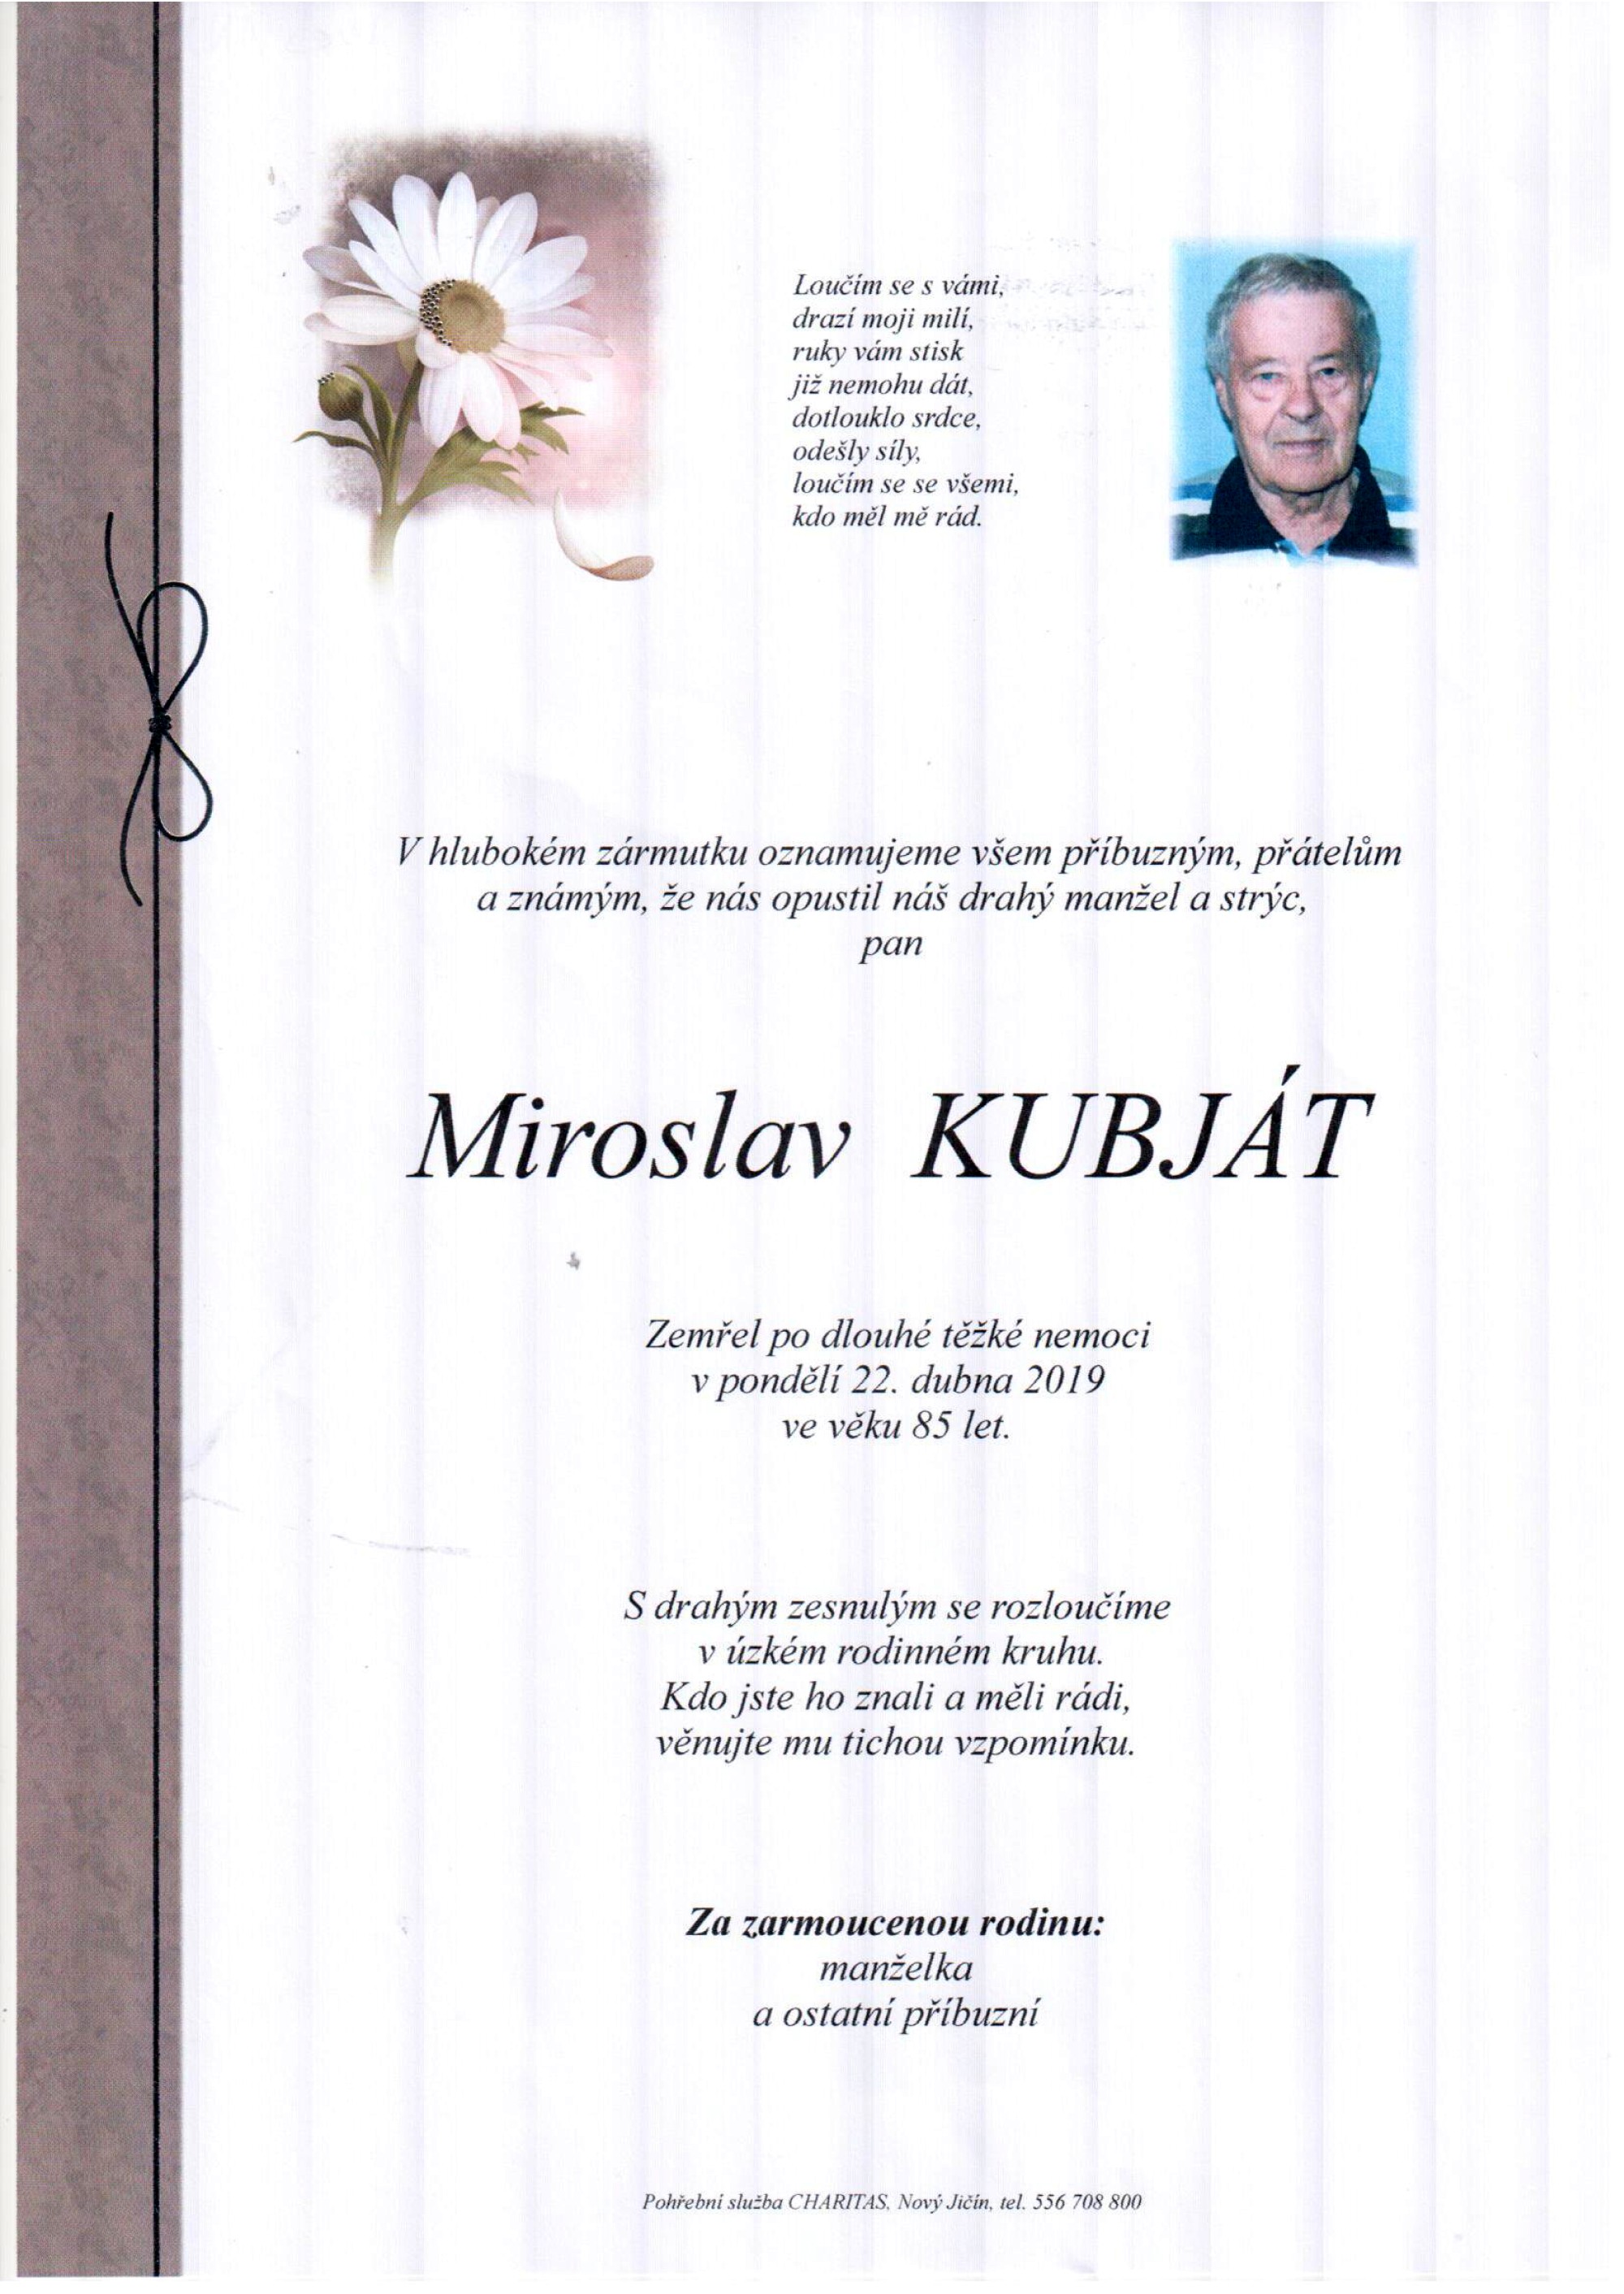 Miroslav Kubját